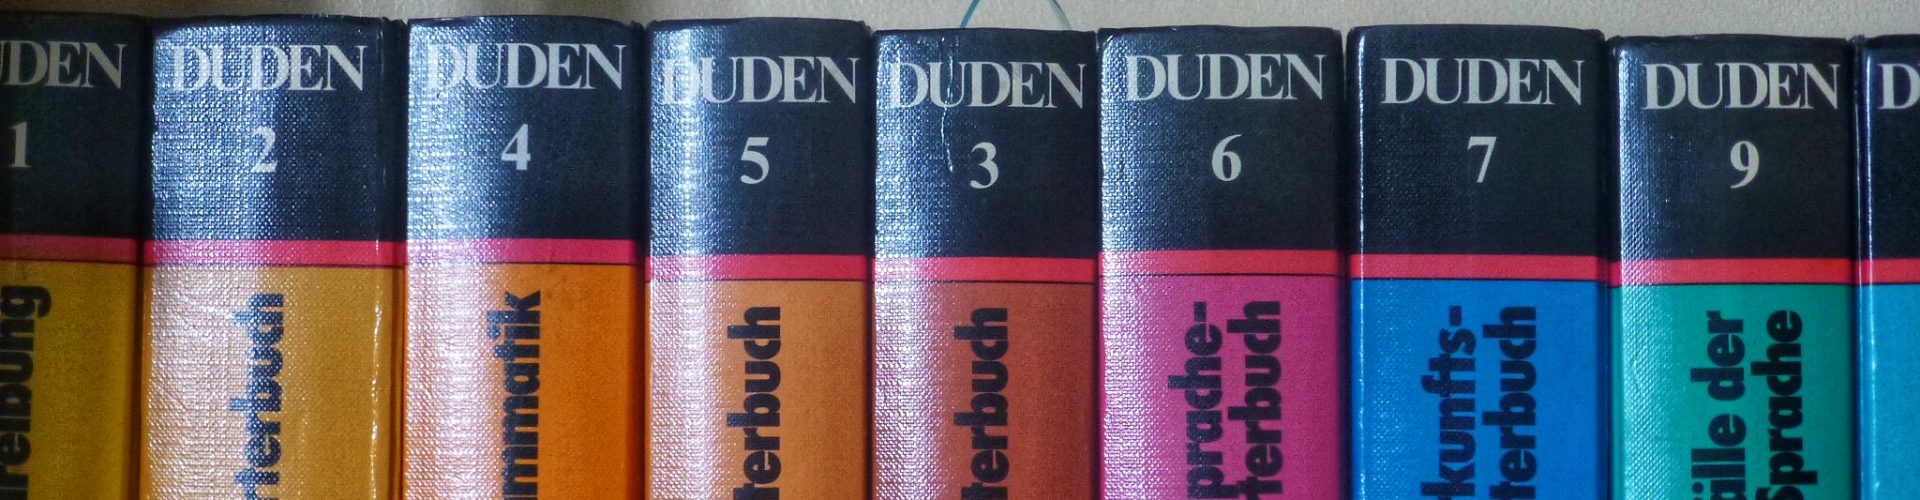 La collection des "Duden" qu'on utilise pour enseigner l'allemand